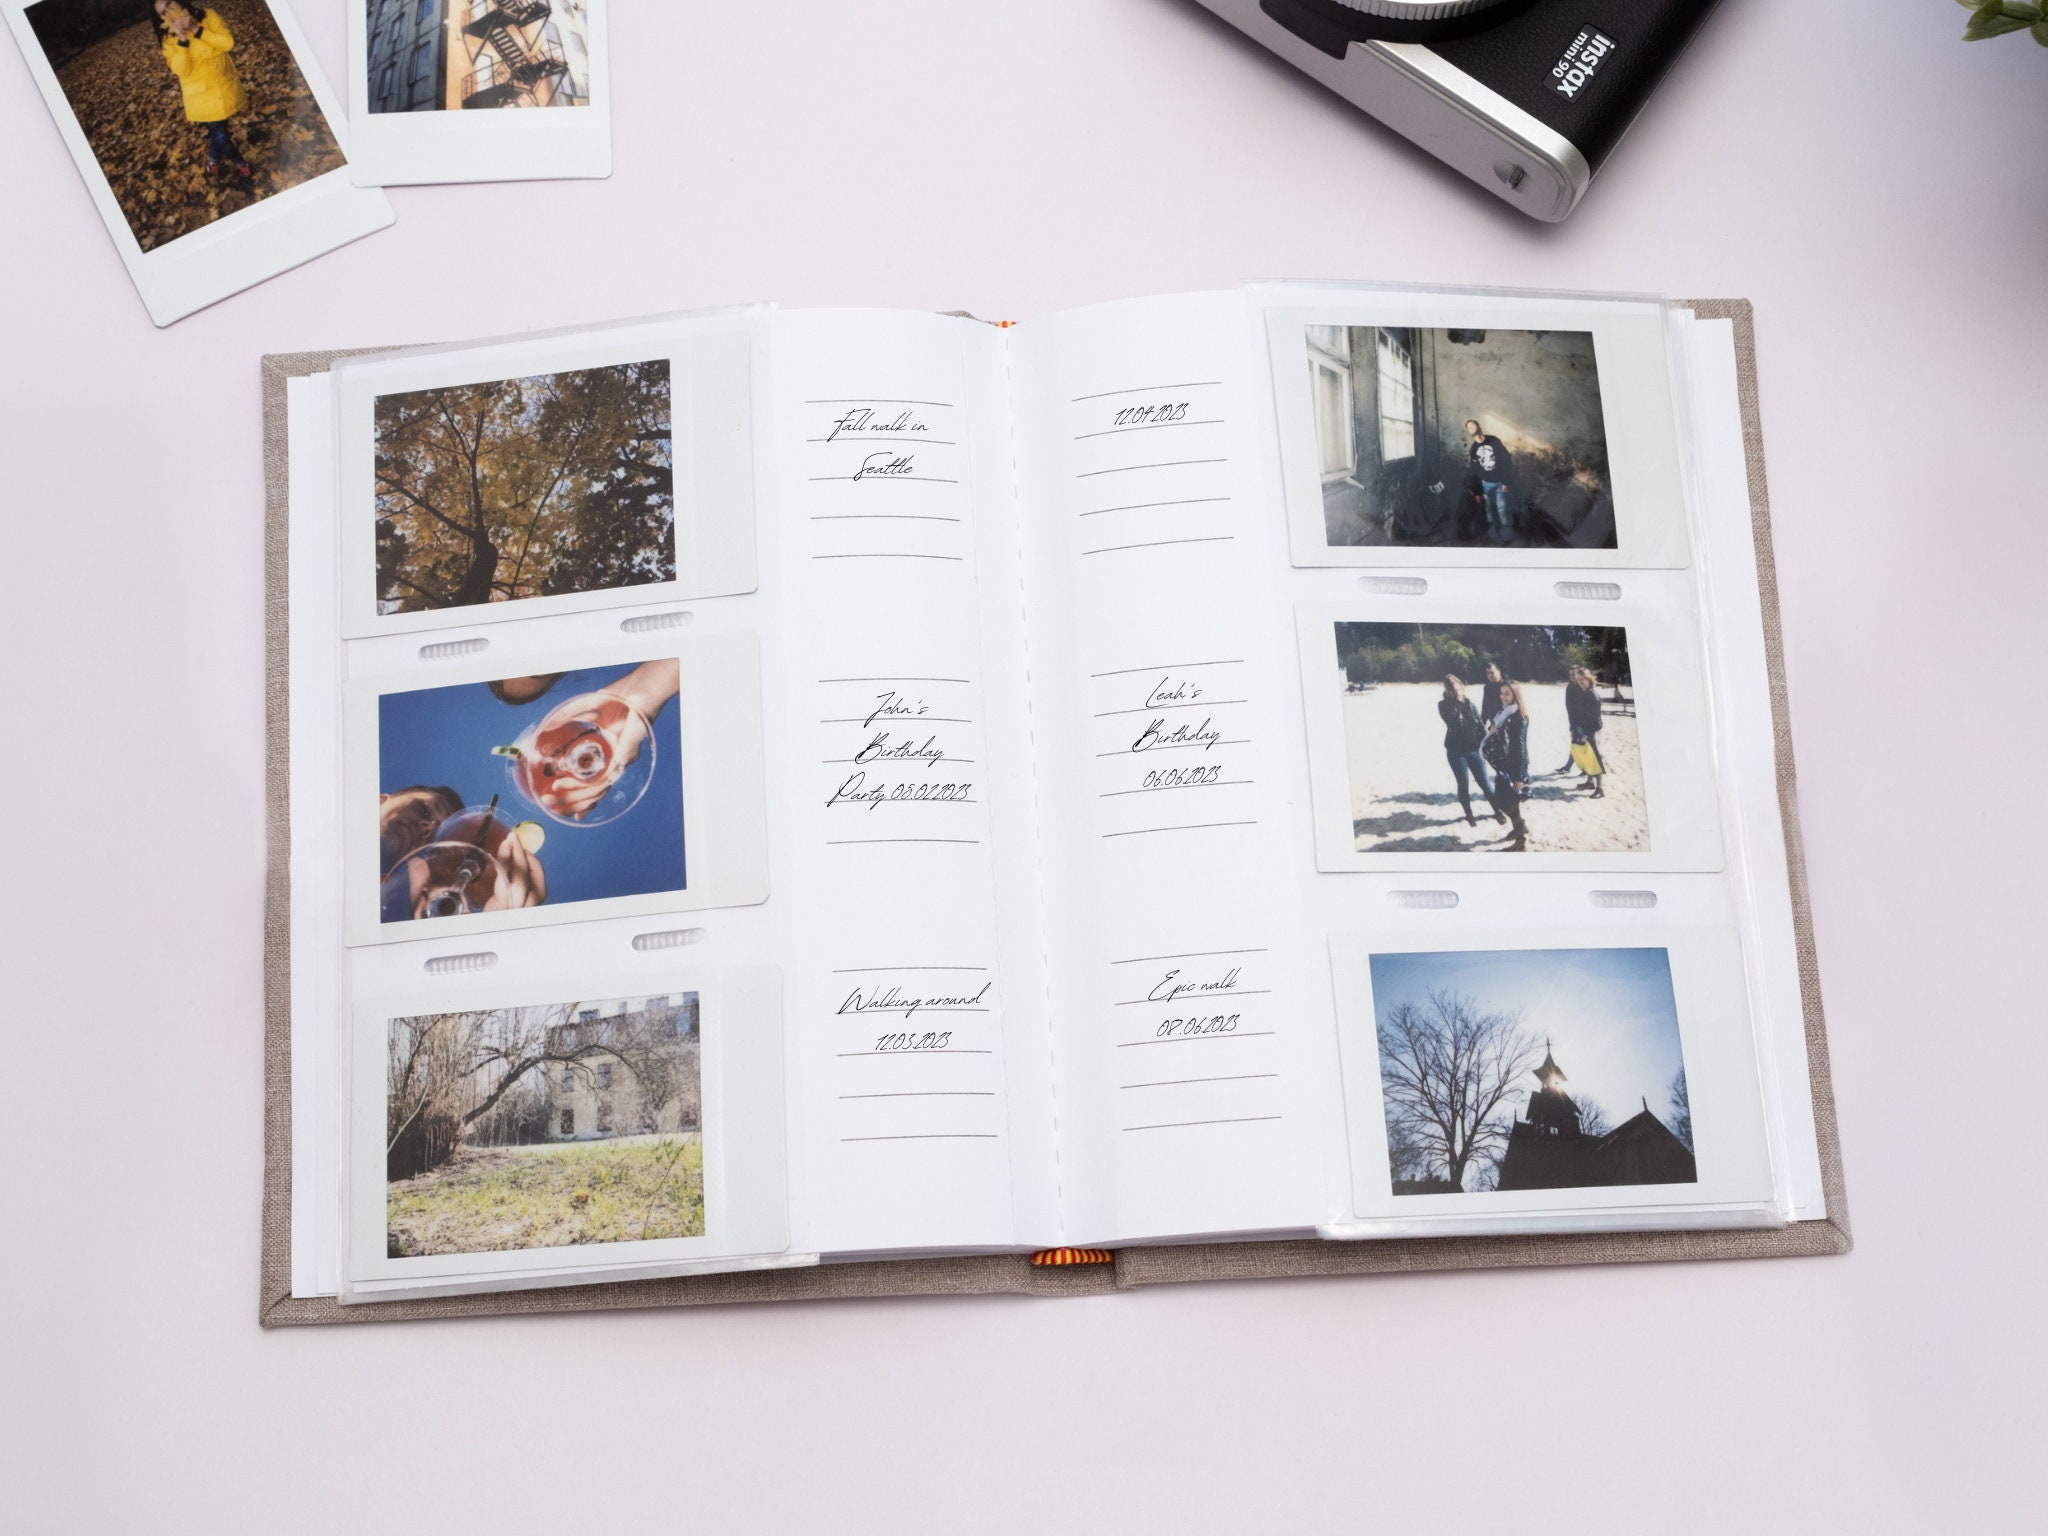 Album de Fotos, Album Fotografico, para Escribir y Pegar Fotografías 10x15,  Polaroid, Fuji Instax. Tapa Personalizable